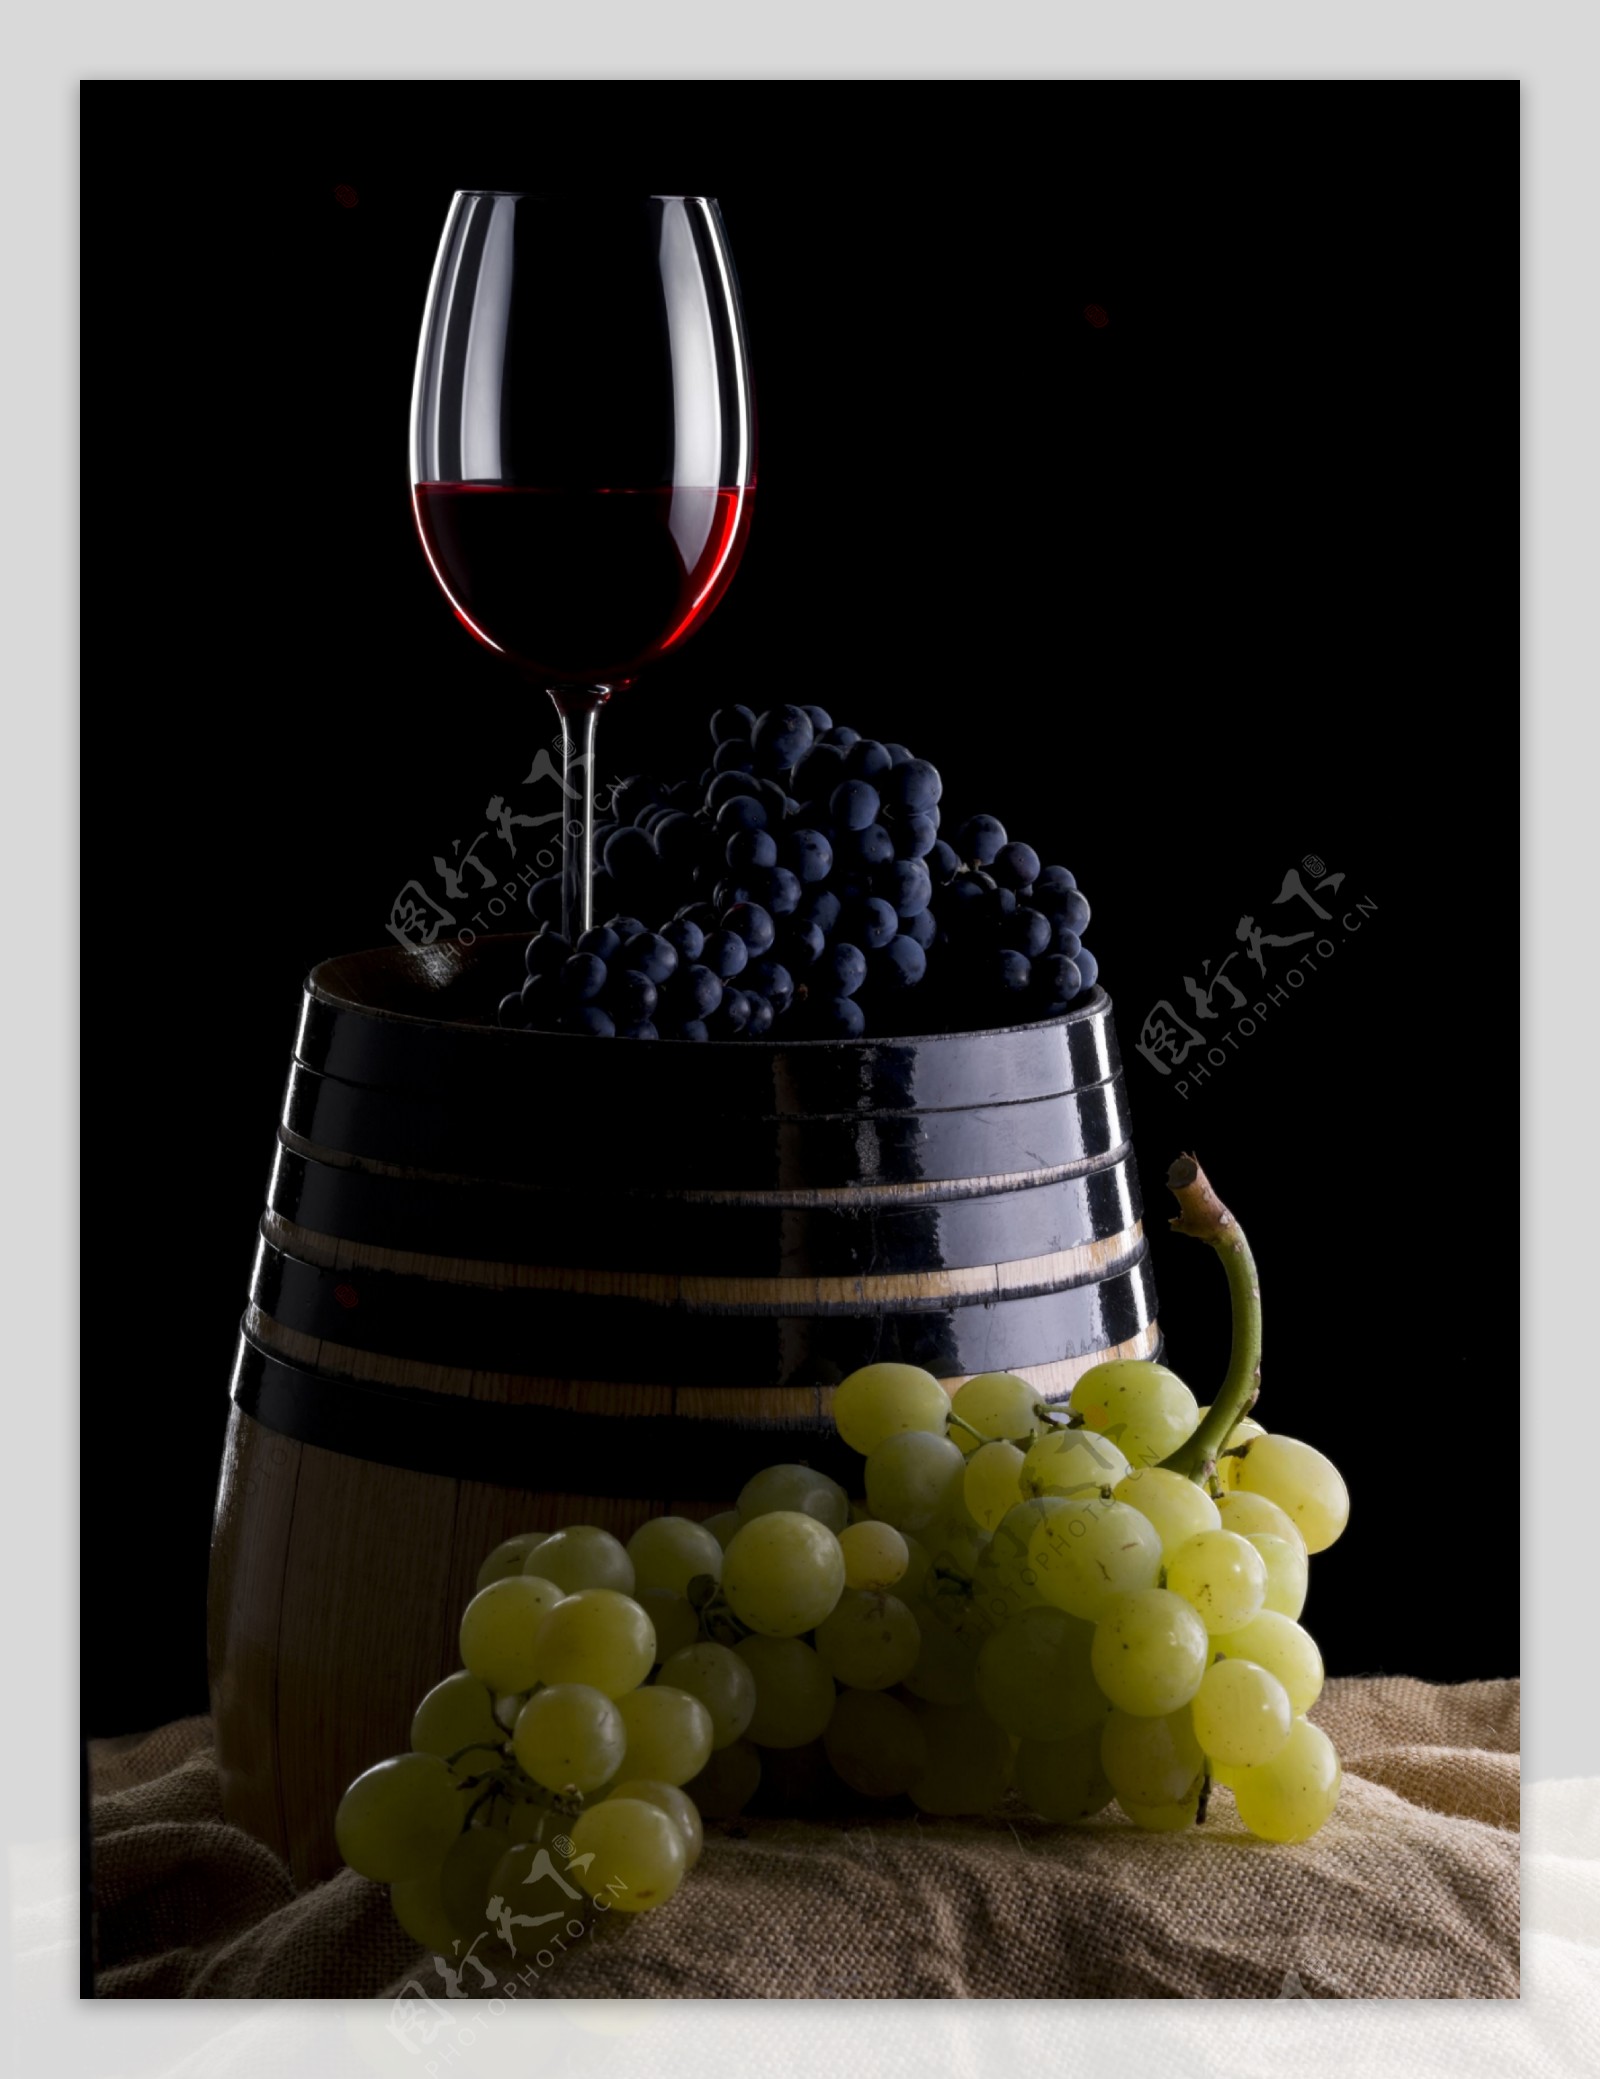 麻布上的葡萄与葡萄酒